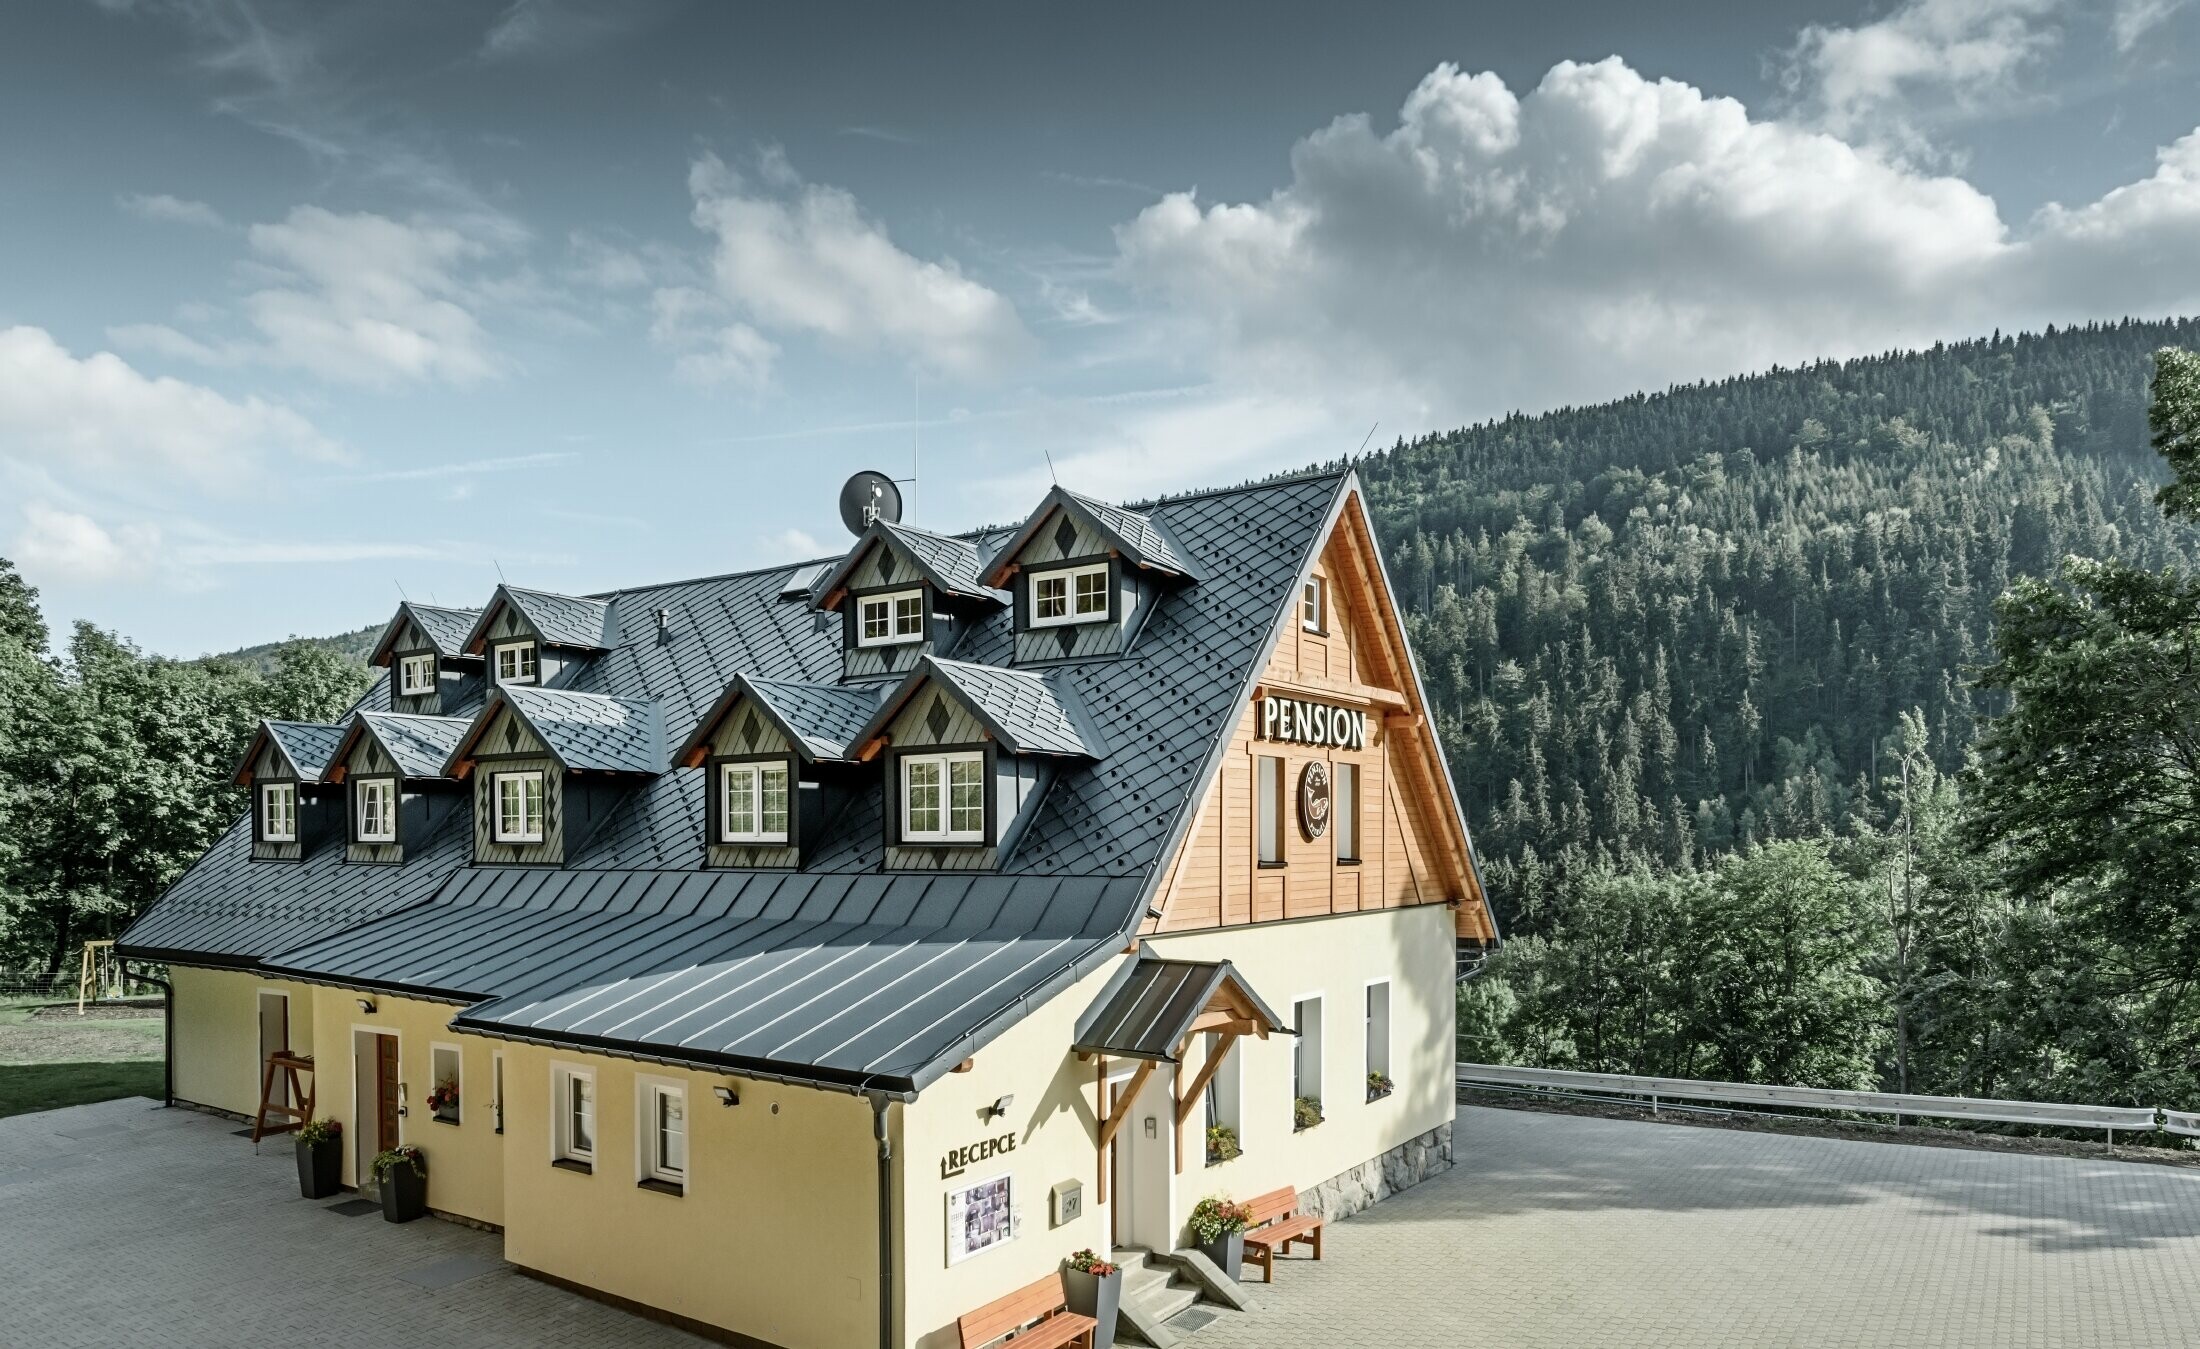 Pensjonat w Czechach z dachem stromym, pokryty wieloma lukarnami z dachem aluminiowym PREFA, dach rombowy w formie łusek z ochroną przeciwśniegową